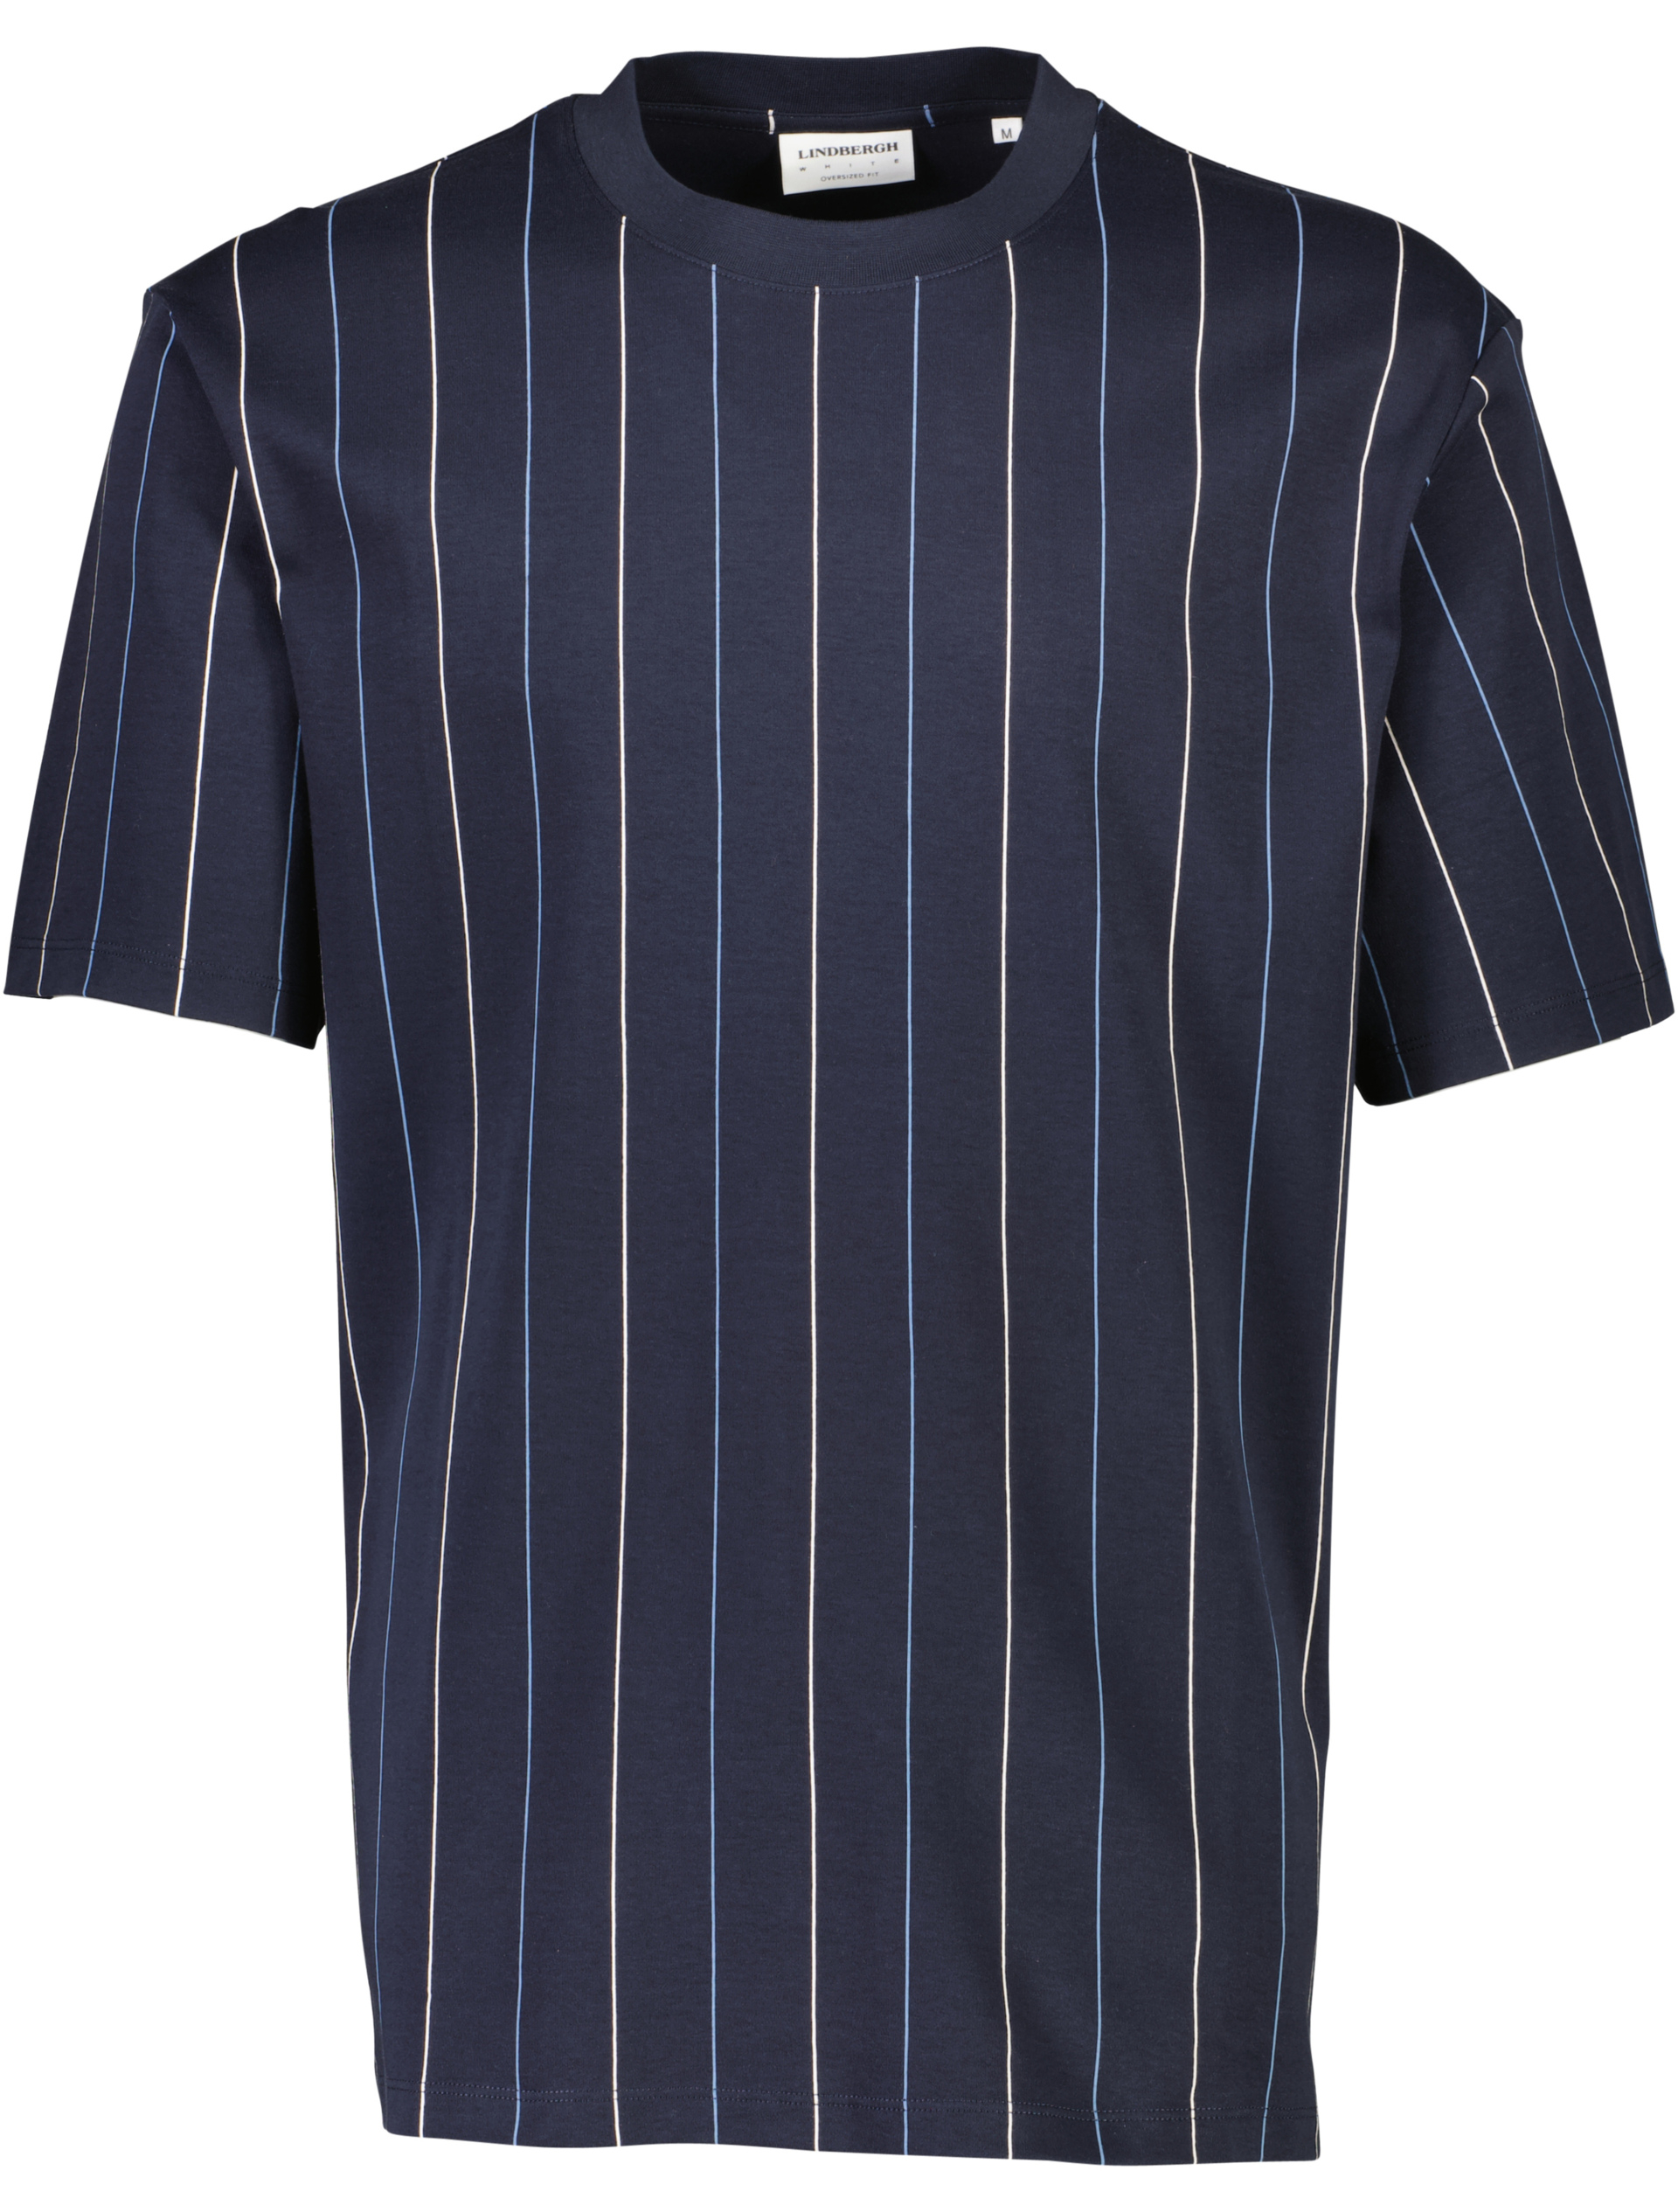 Lindbergh T-shirt blå / navy